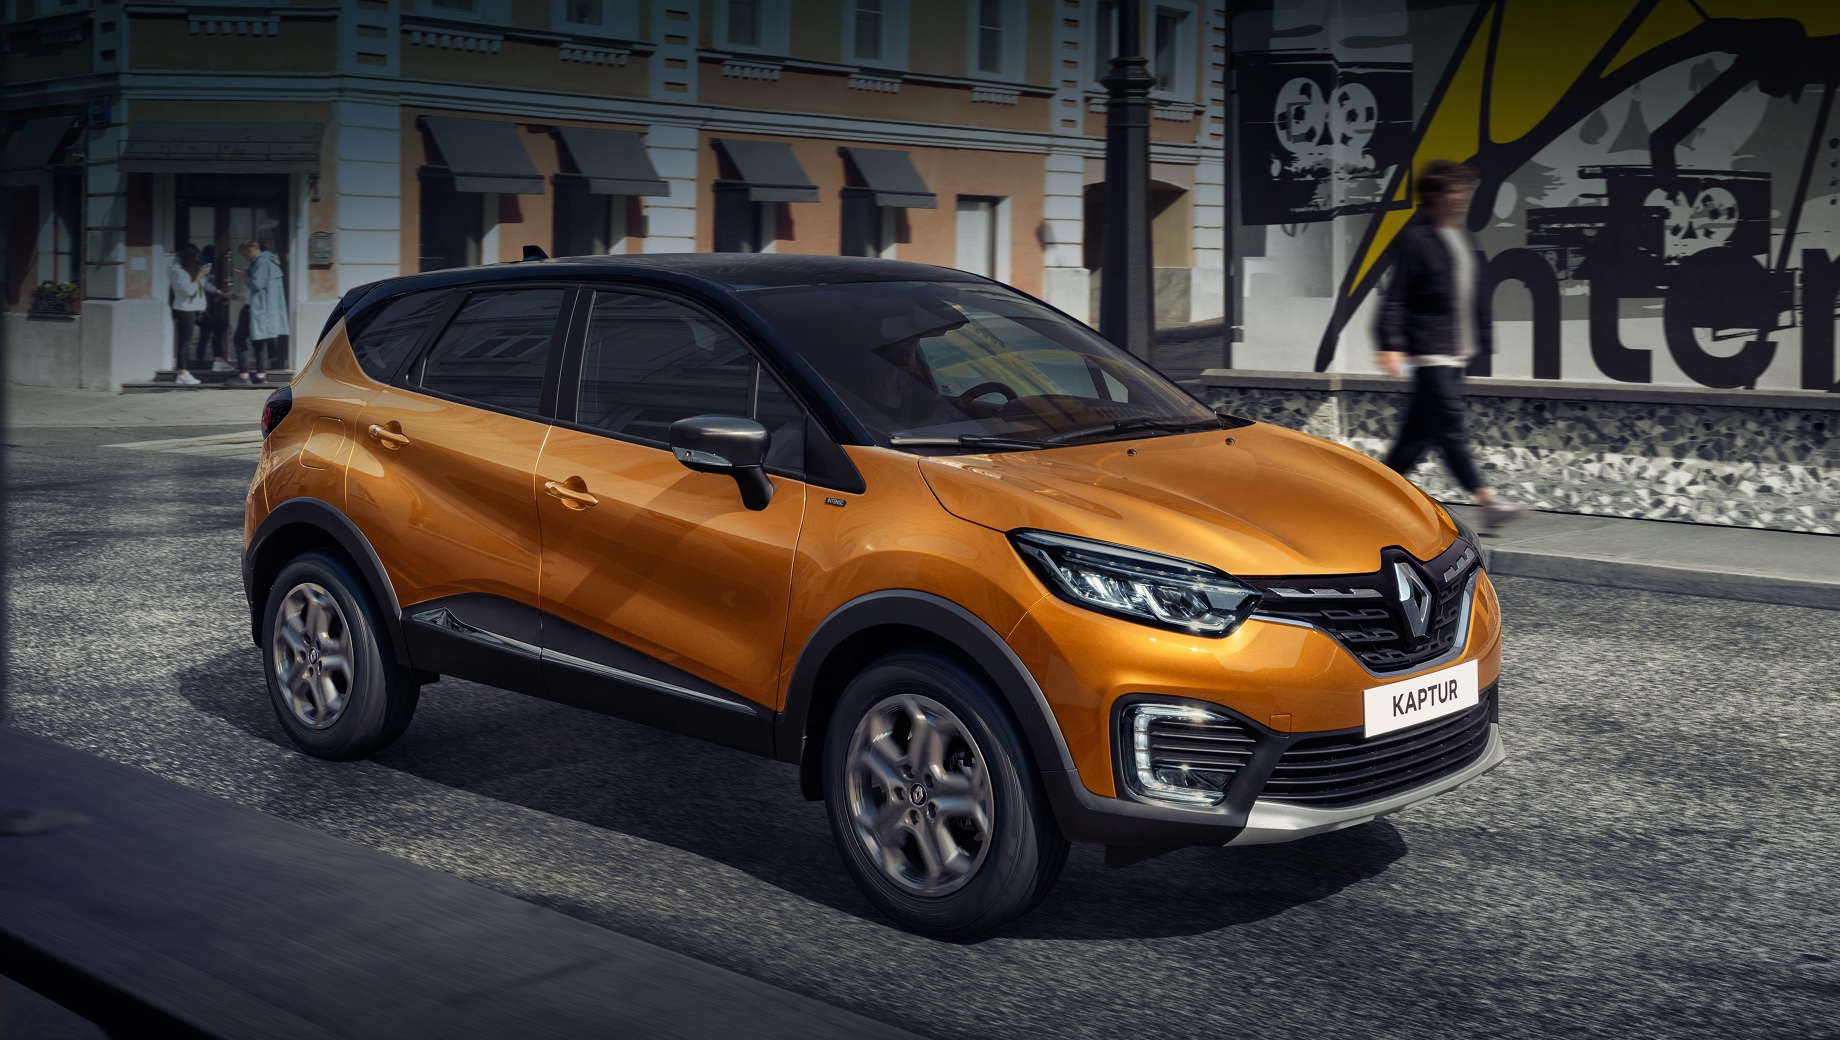 Renault kaptur. Российский офис Renault уверяет, что особенный Kaptur «создан с учётом пожеланий клиентов», предлагает «самые востребованные опции» и «дополнительные возможности для персонализации». Светодиодные фары Pure Vision в «интенсивной» вариации требуют доплату.